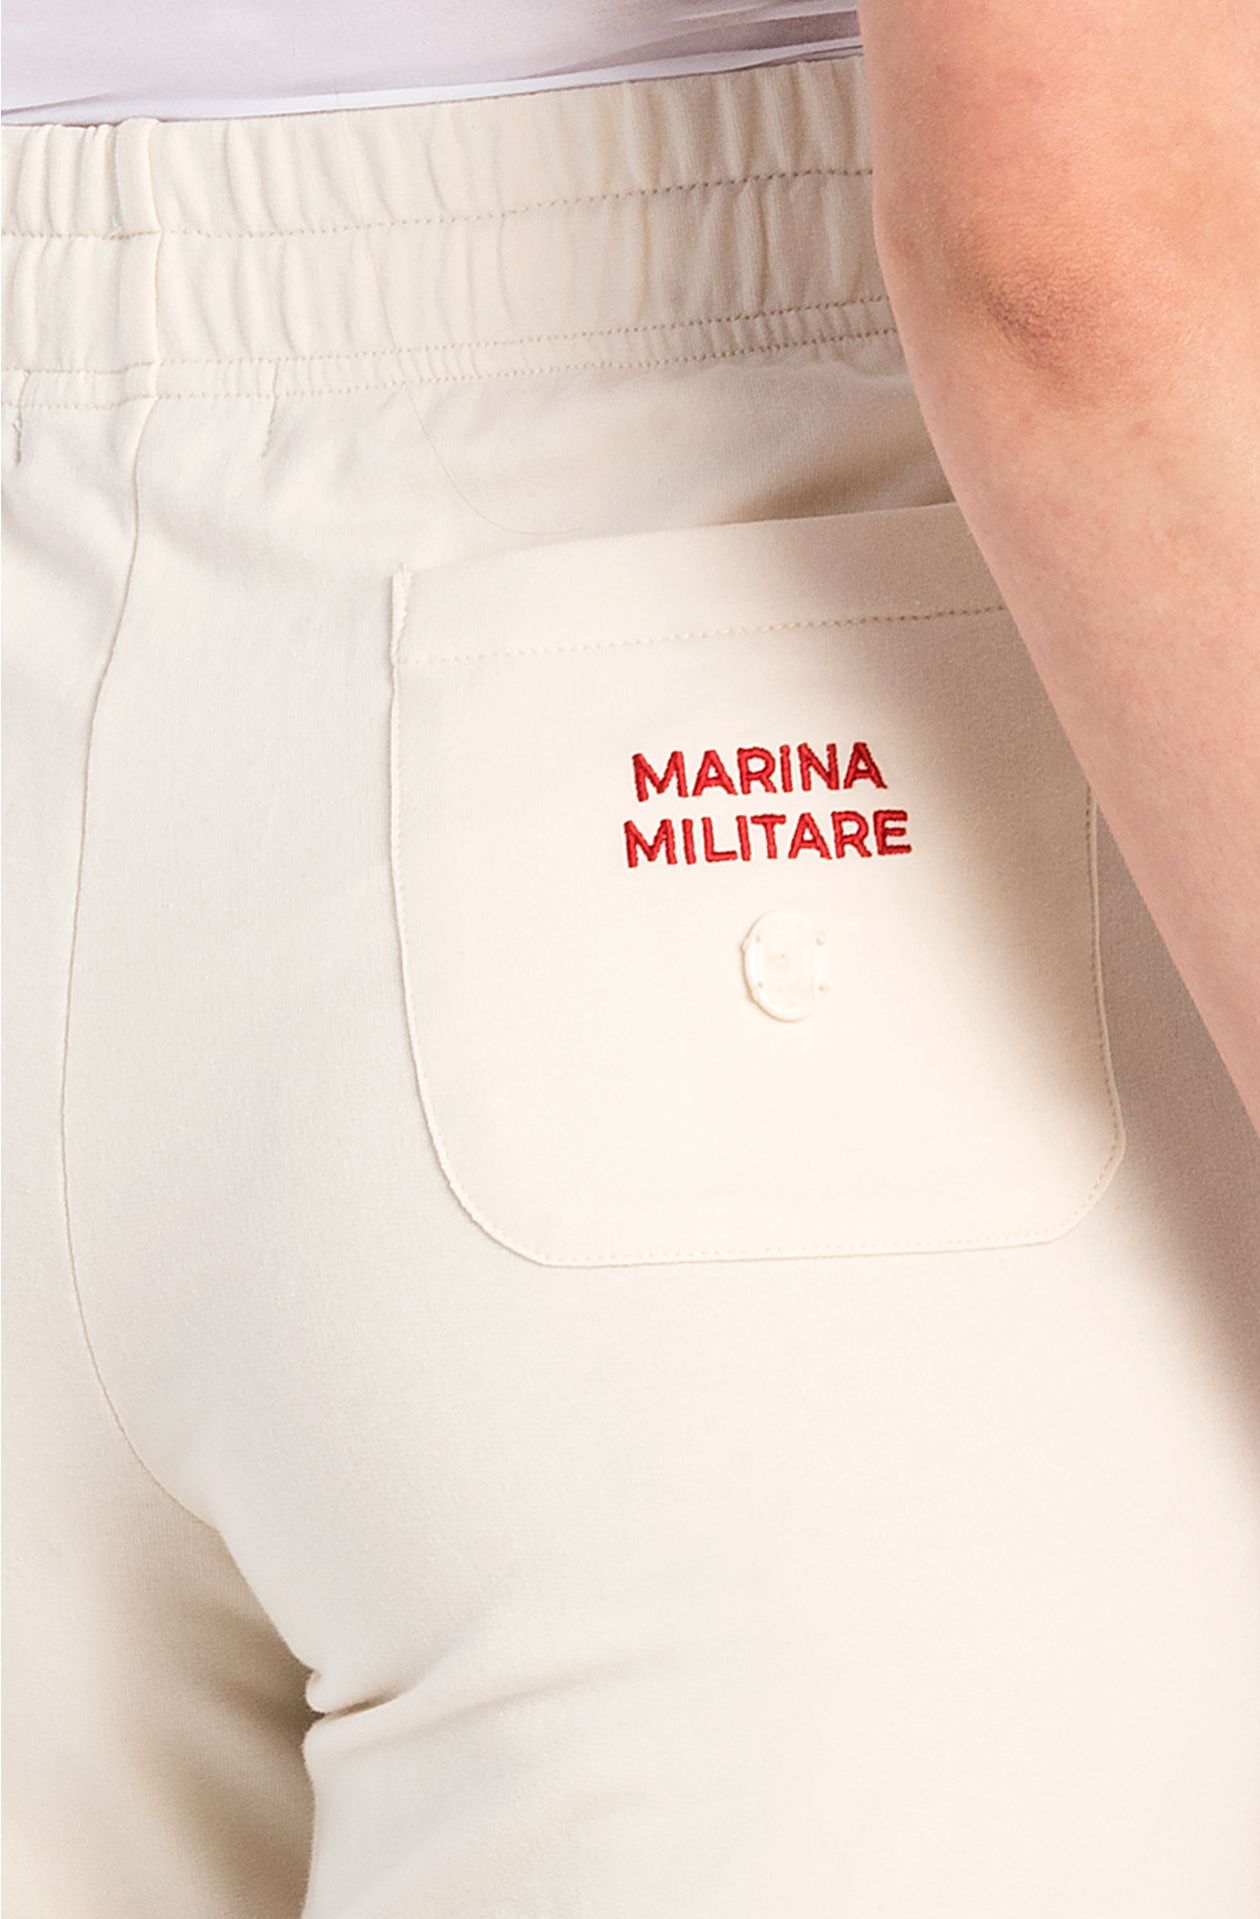 Pantalones de la Academia Naval